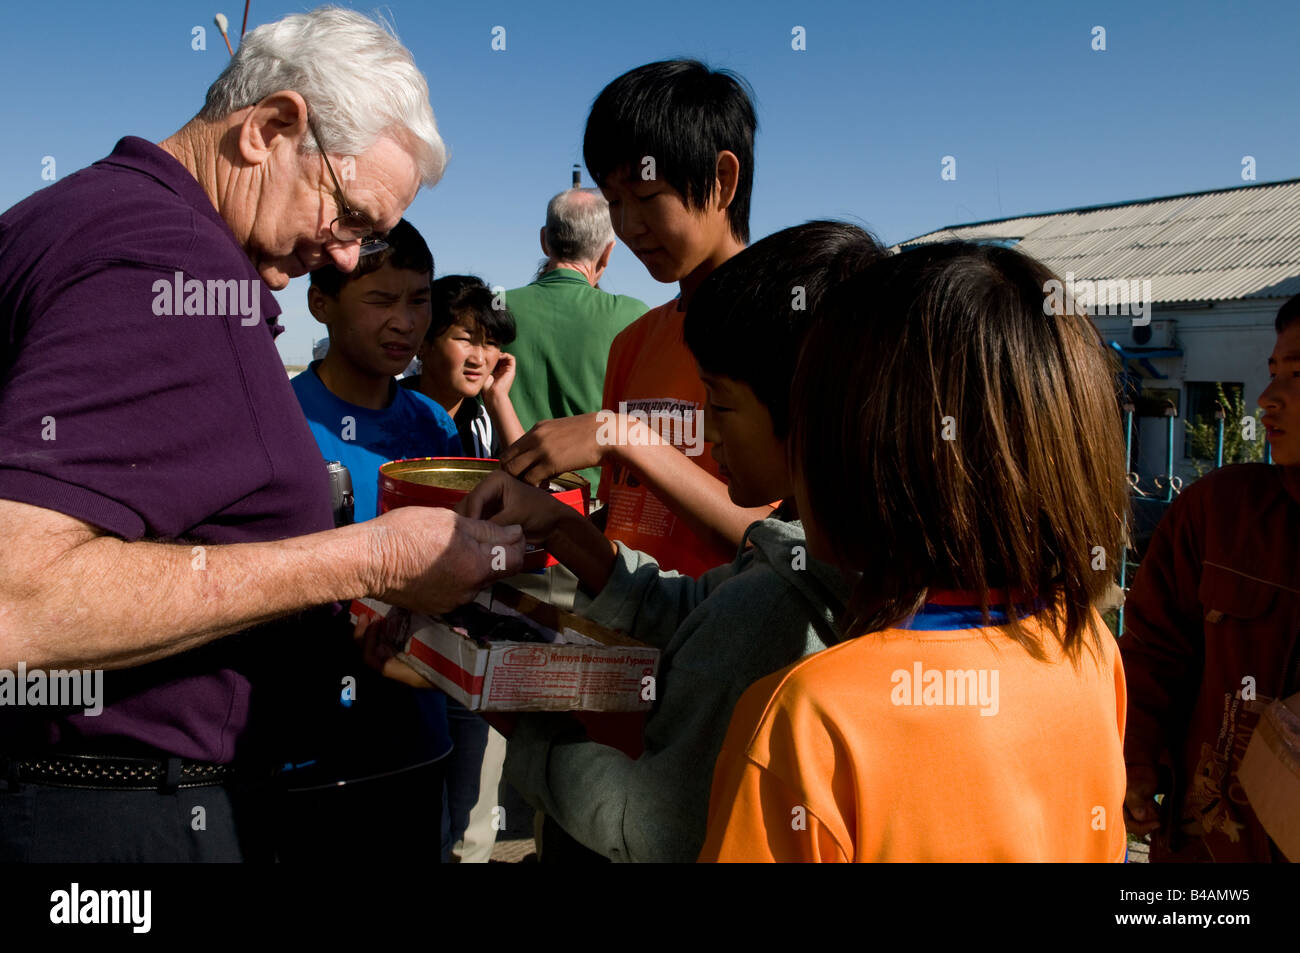 Les passagers étrangers acheter des souvenirs d'enfants mongols sur une plate-forme d'une gare ferroviaire mongol Banque D'Images